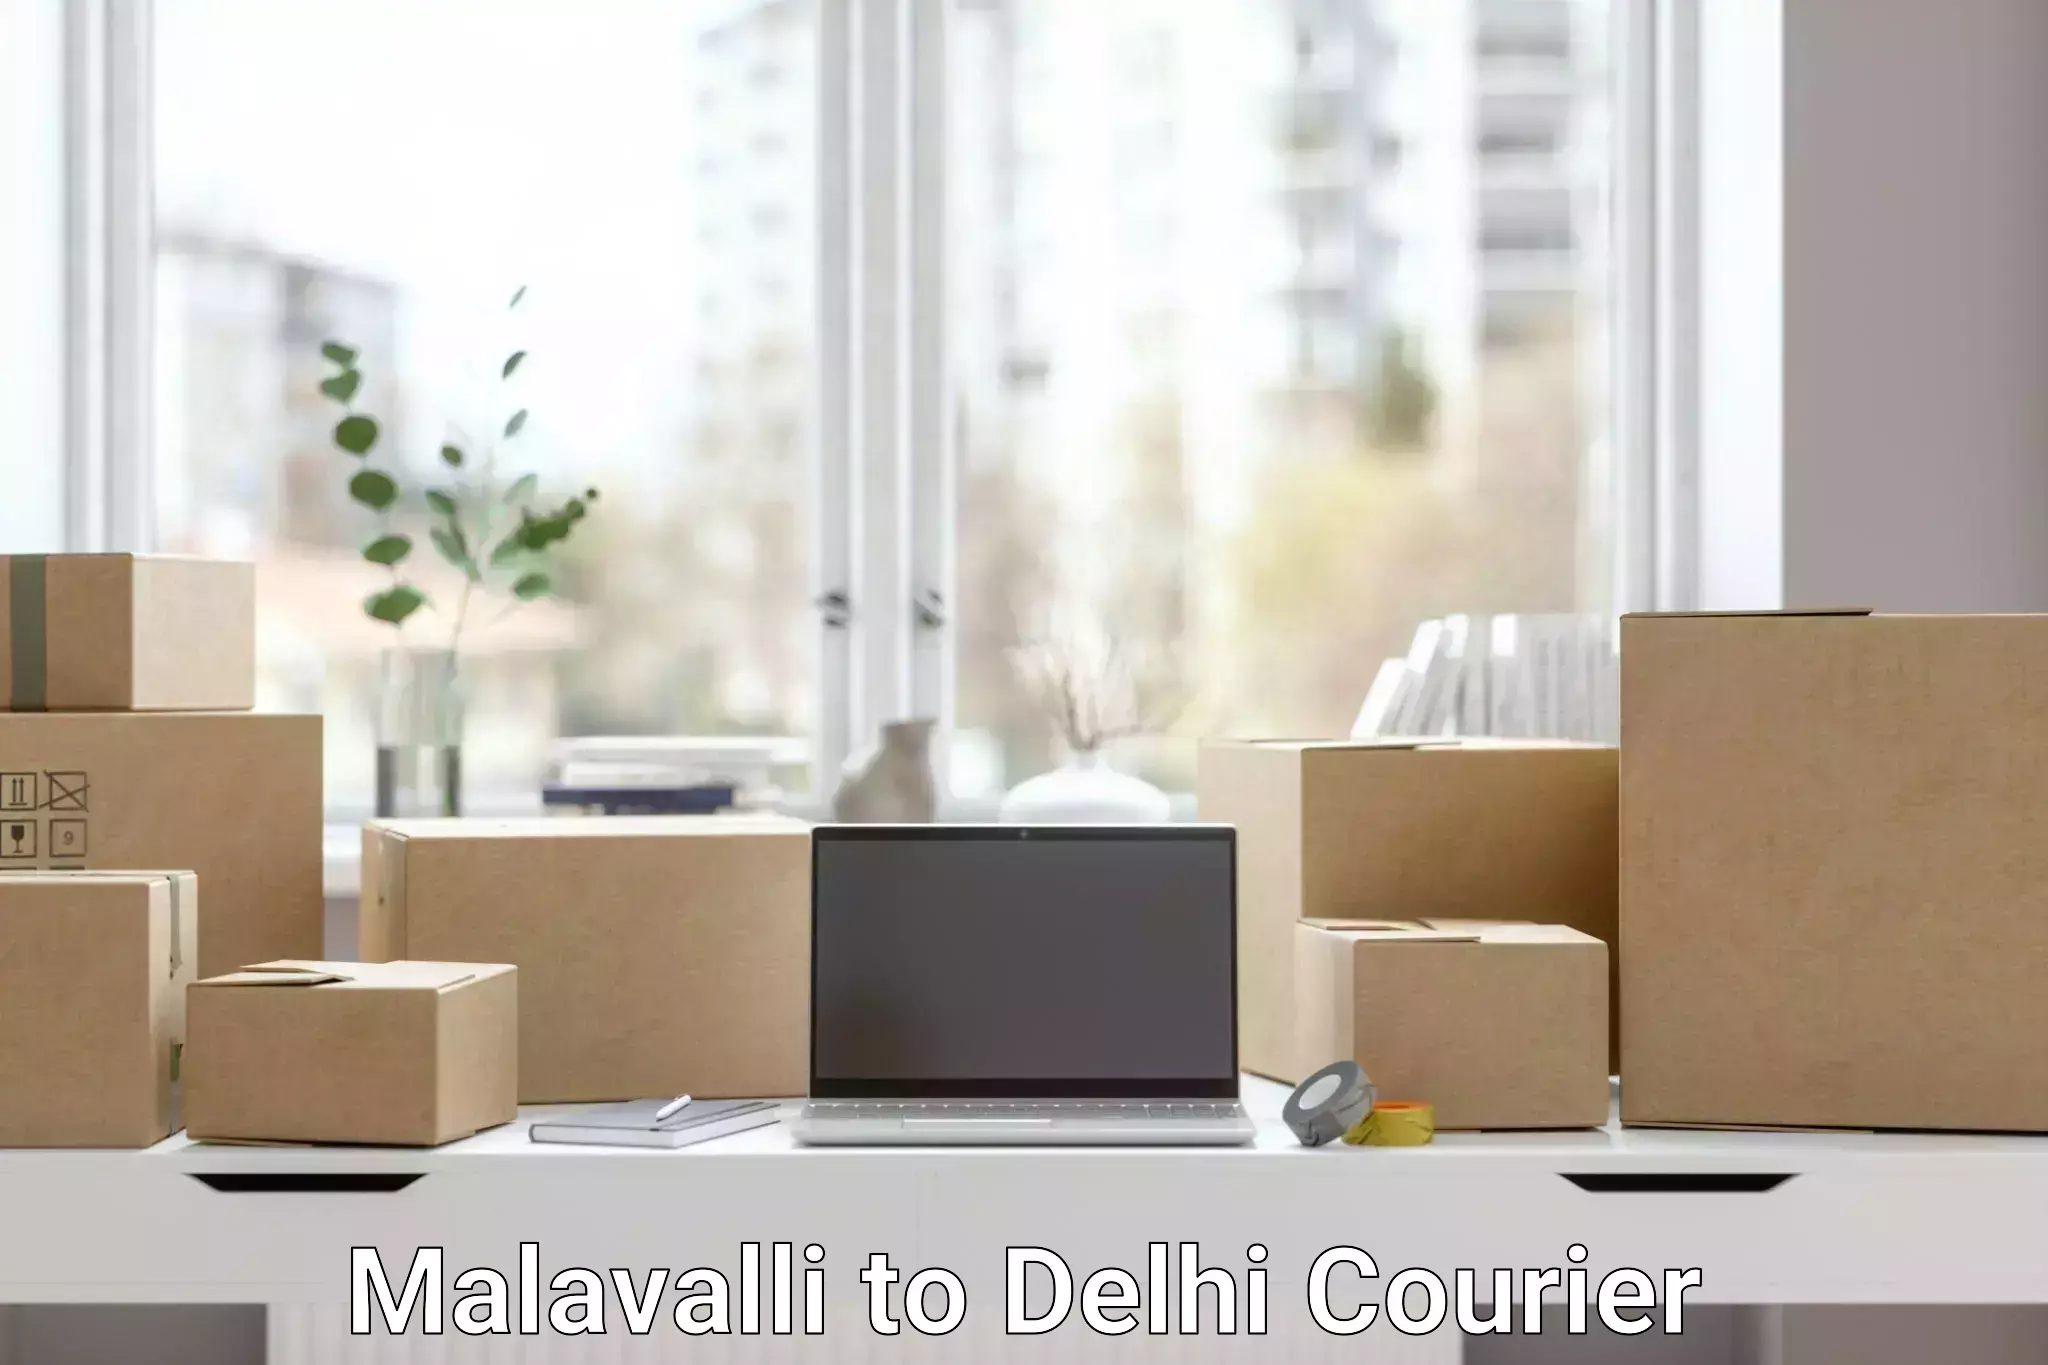 Local delivery service in Malavalli to University of Delhi